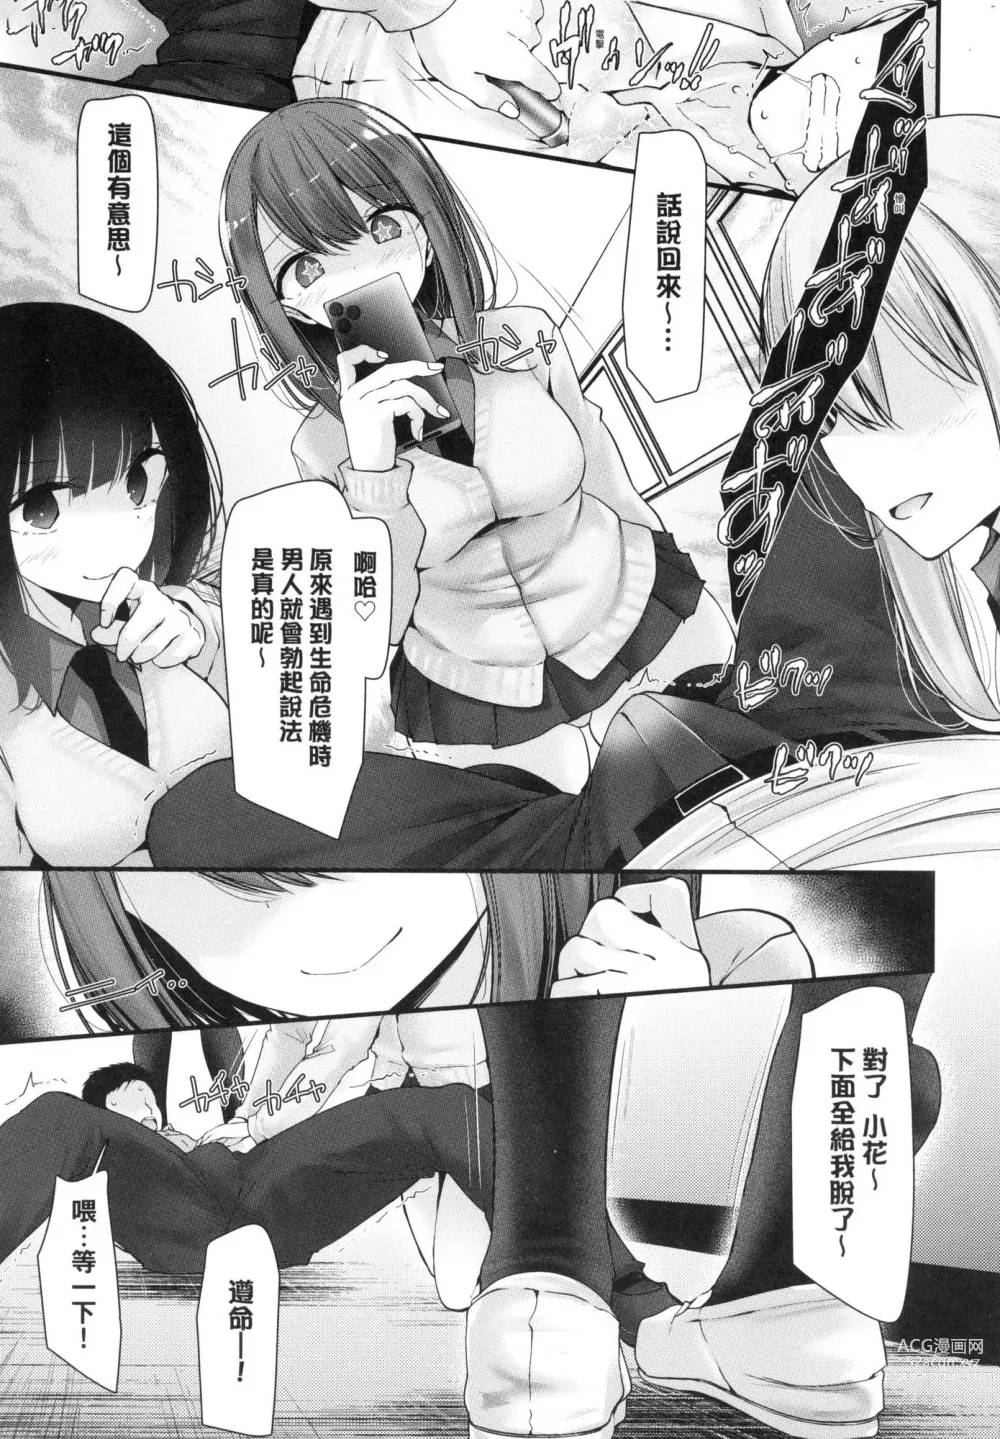 Page 37 of manga 自慰套教室-新學期- 女學生播種懲罰計畫 (decensored)